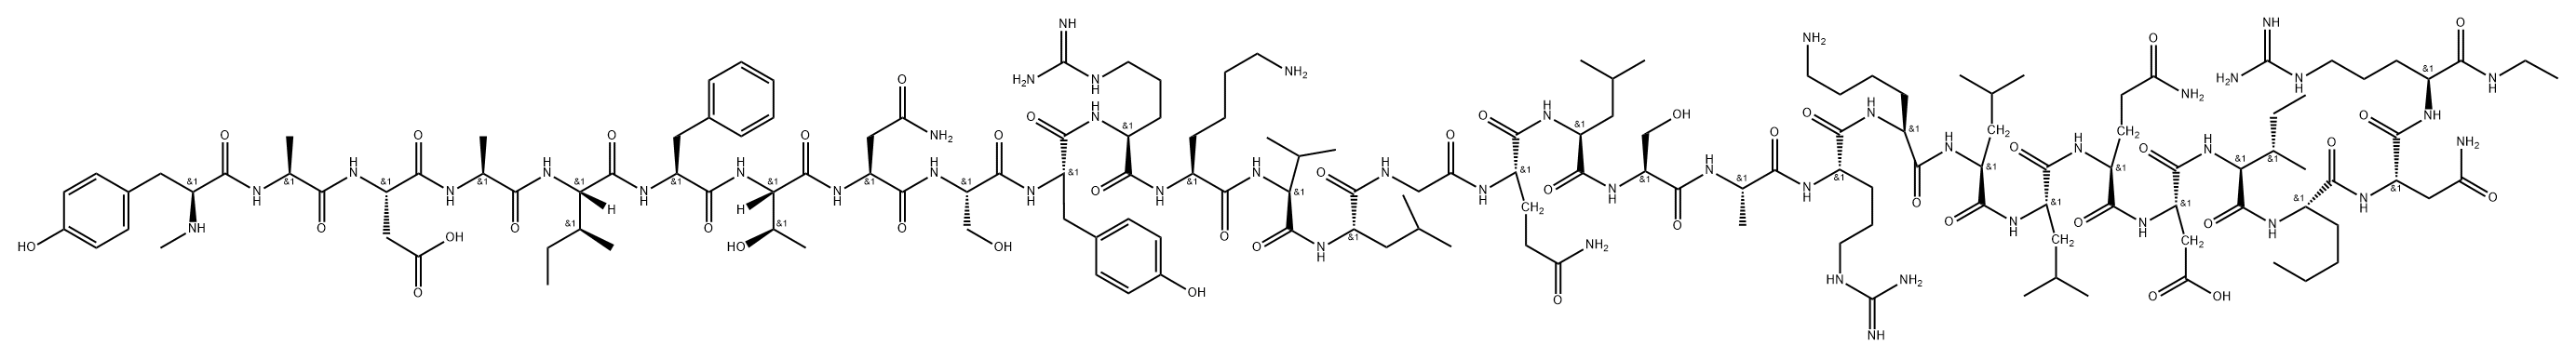 somatotropin releasing hormone-(1-29)NHEt, 1-N-MeTyr-27-Nle-28-Asn- Structure